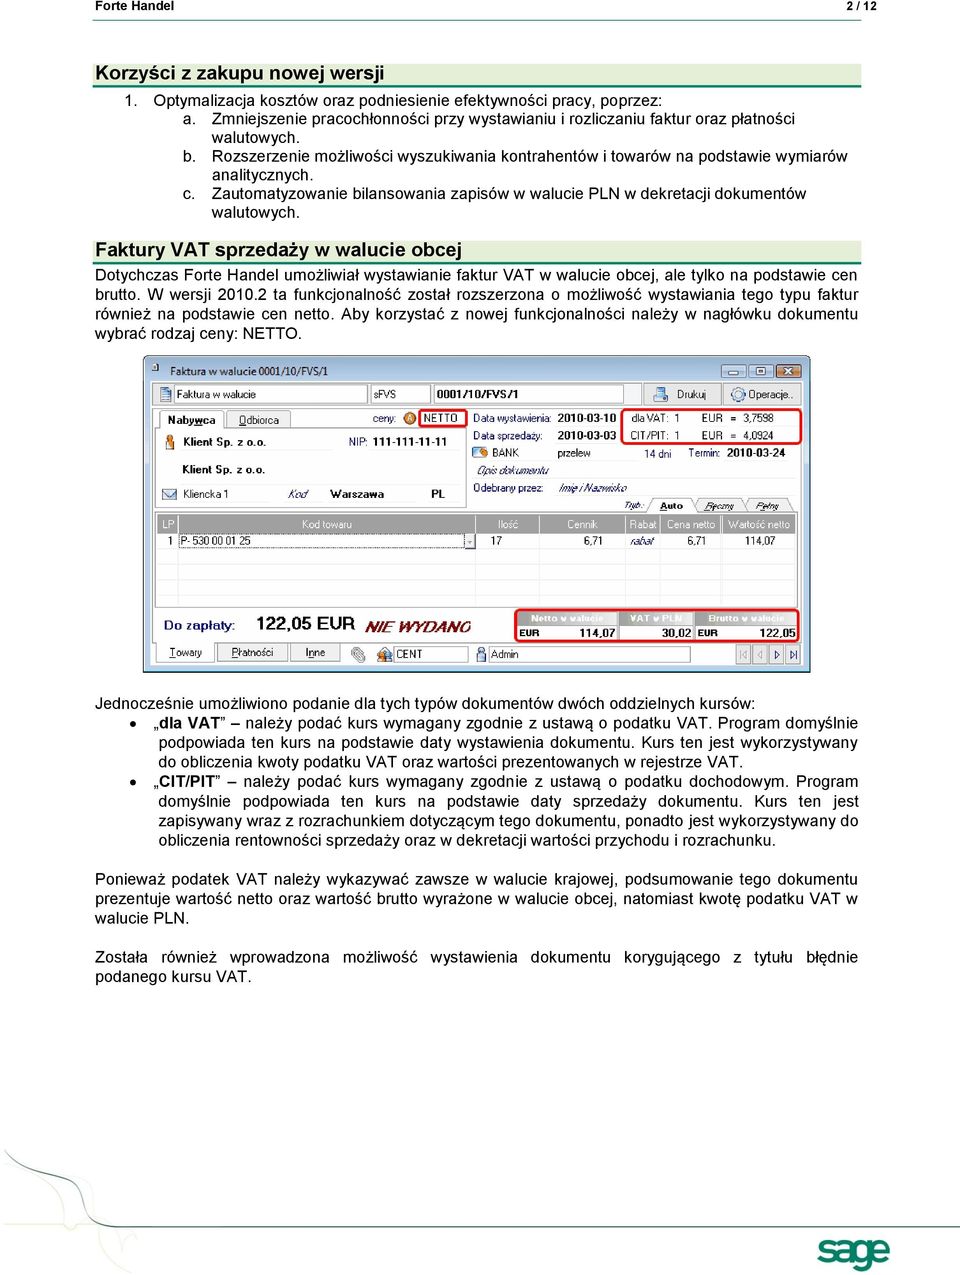 Zautomatyzowanie bilansowania zapisów w walucie PLN w dekretacji dokumentów walutowych.